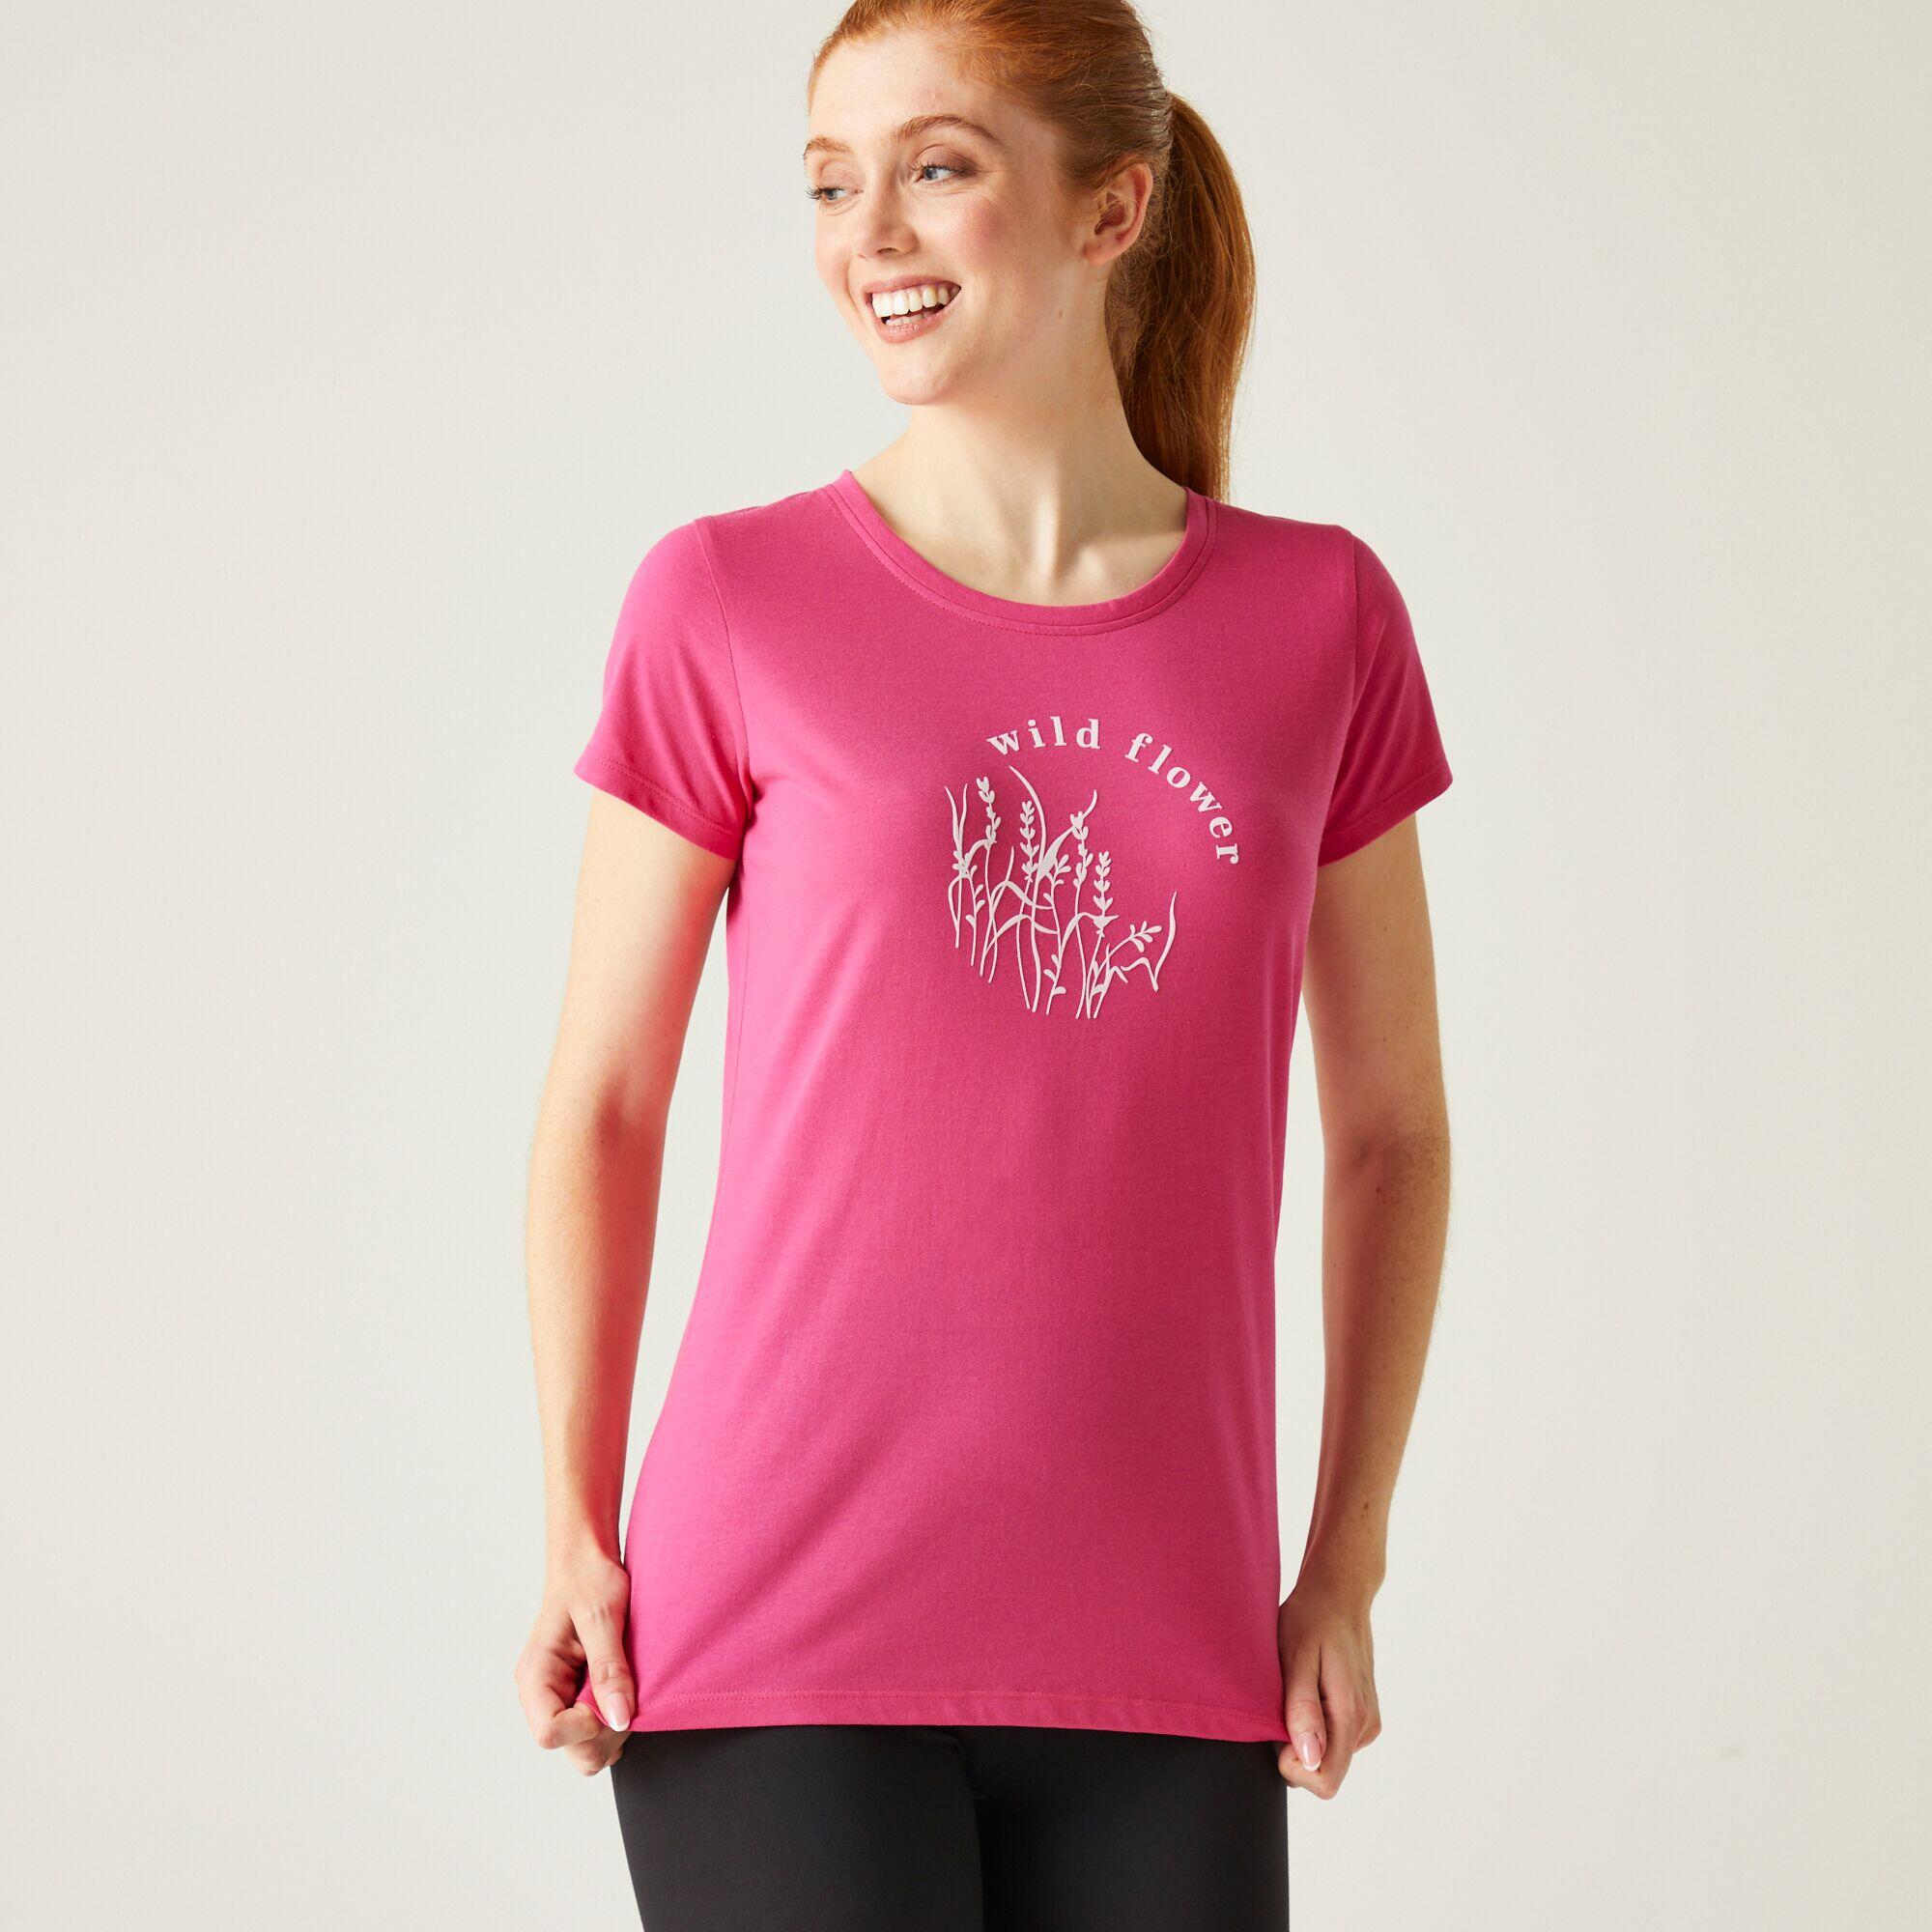 REGATTA Women's Breezed IV T-Shirt